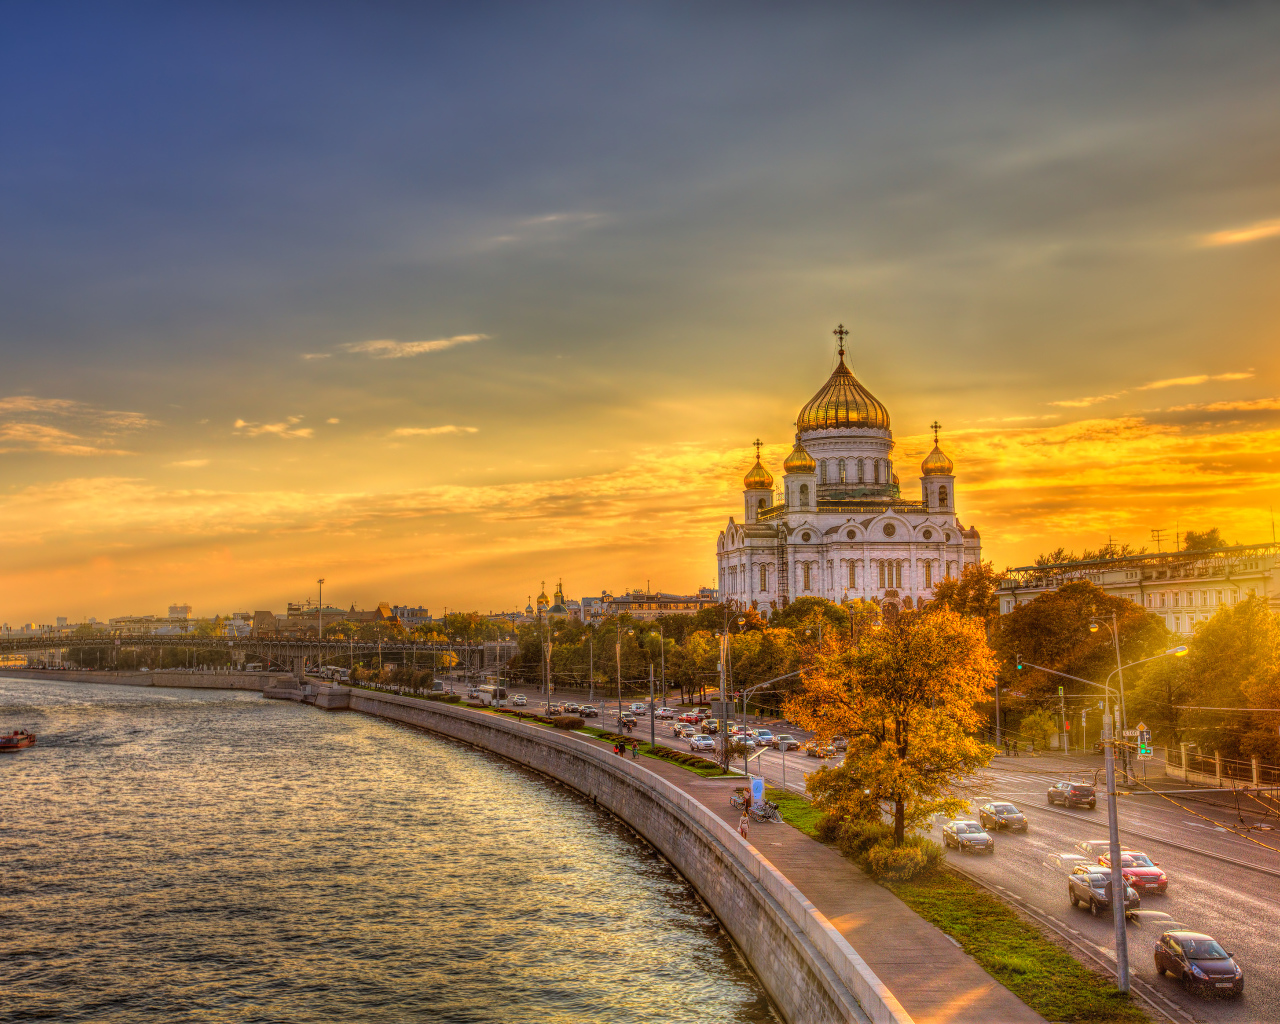 Храм Христа Спасителя на фоне заката, Москва. Россия 